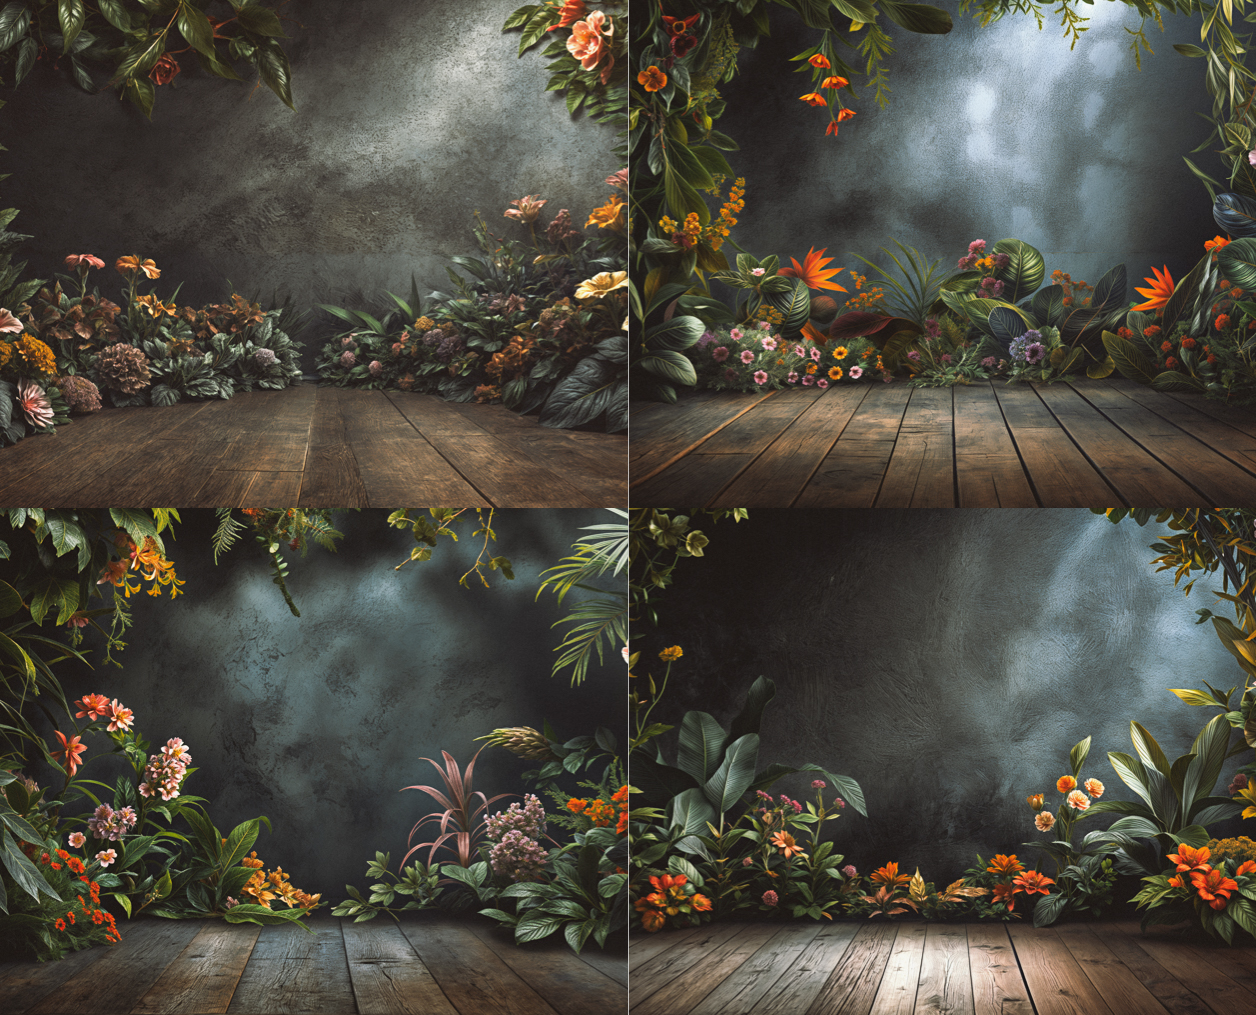 Fondos digitales para fotografía en Photoshop con detalles florales y vegetación exuberante, parte de la colección "Escenarios Naturales"